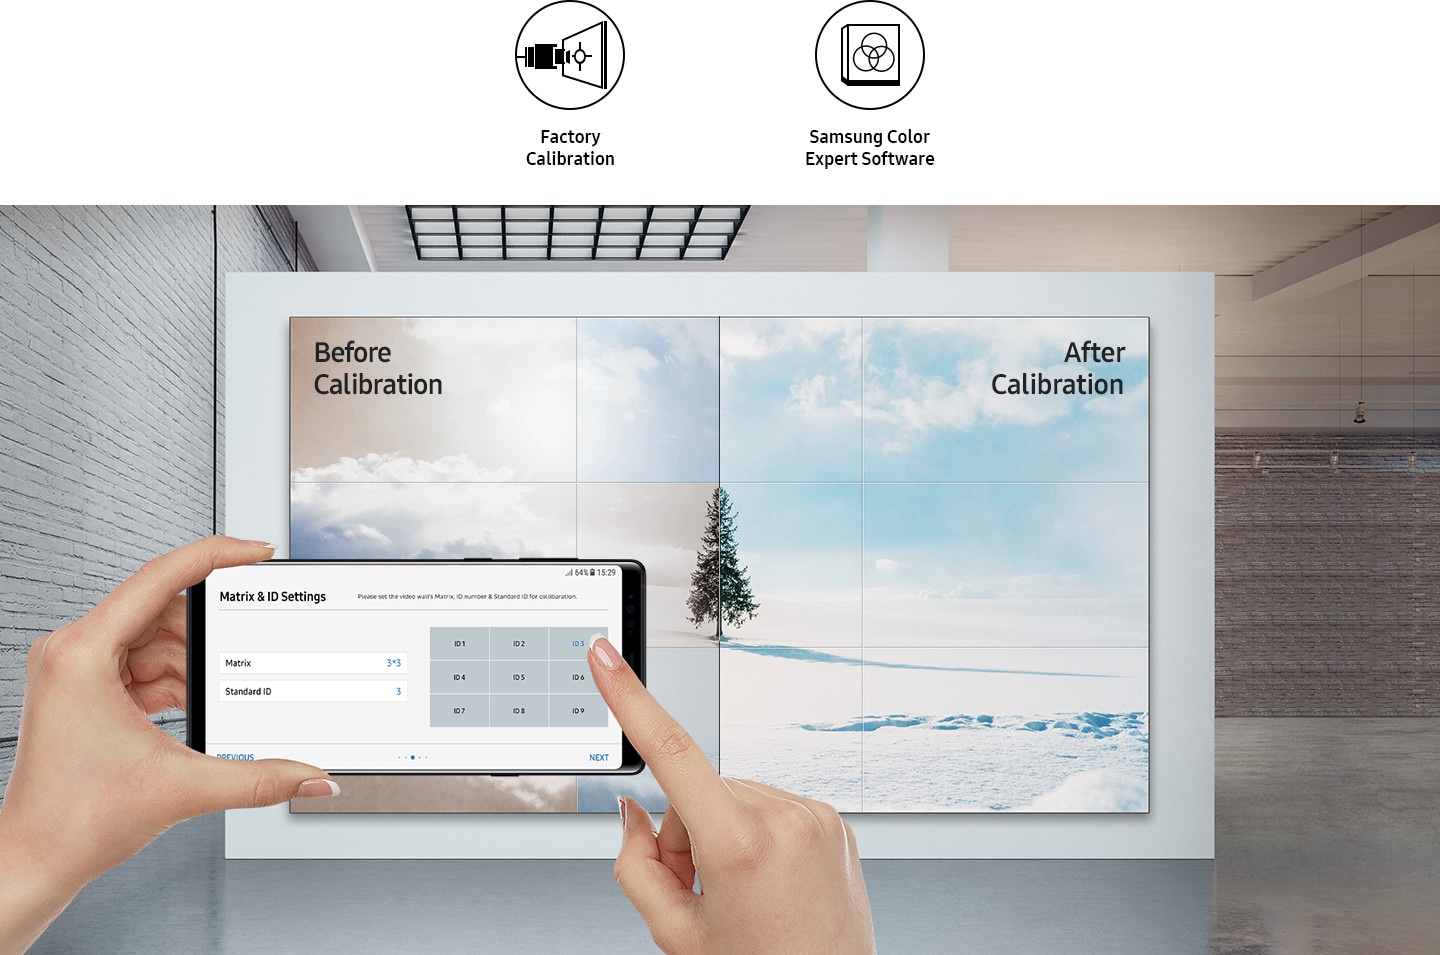 Сравняване на състоянието преди и след калибрирането на видео стената с помощта на телефон.  Има икони като Factory Calibration и Samsung Color Expert Software.